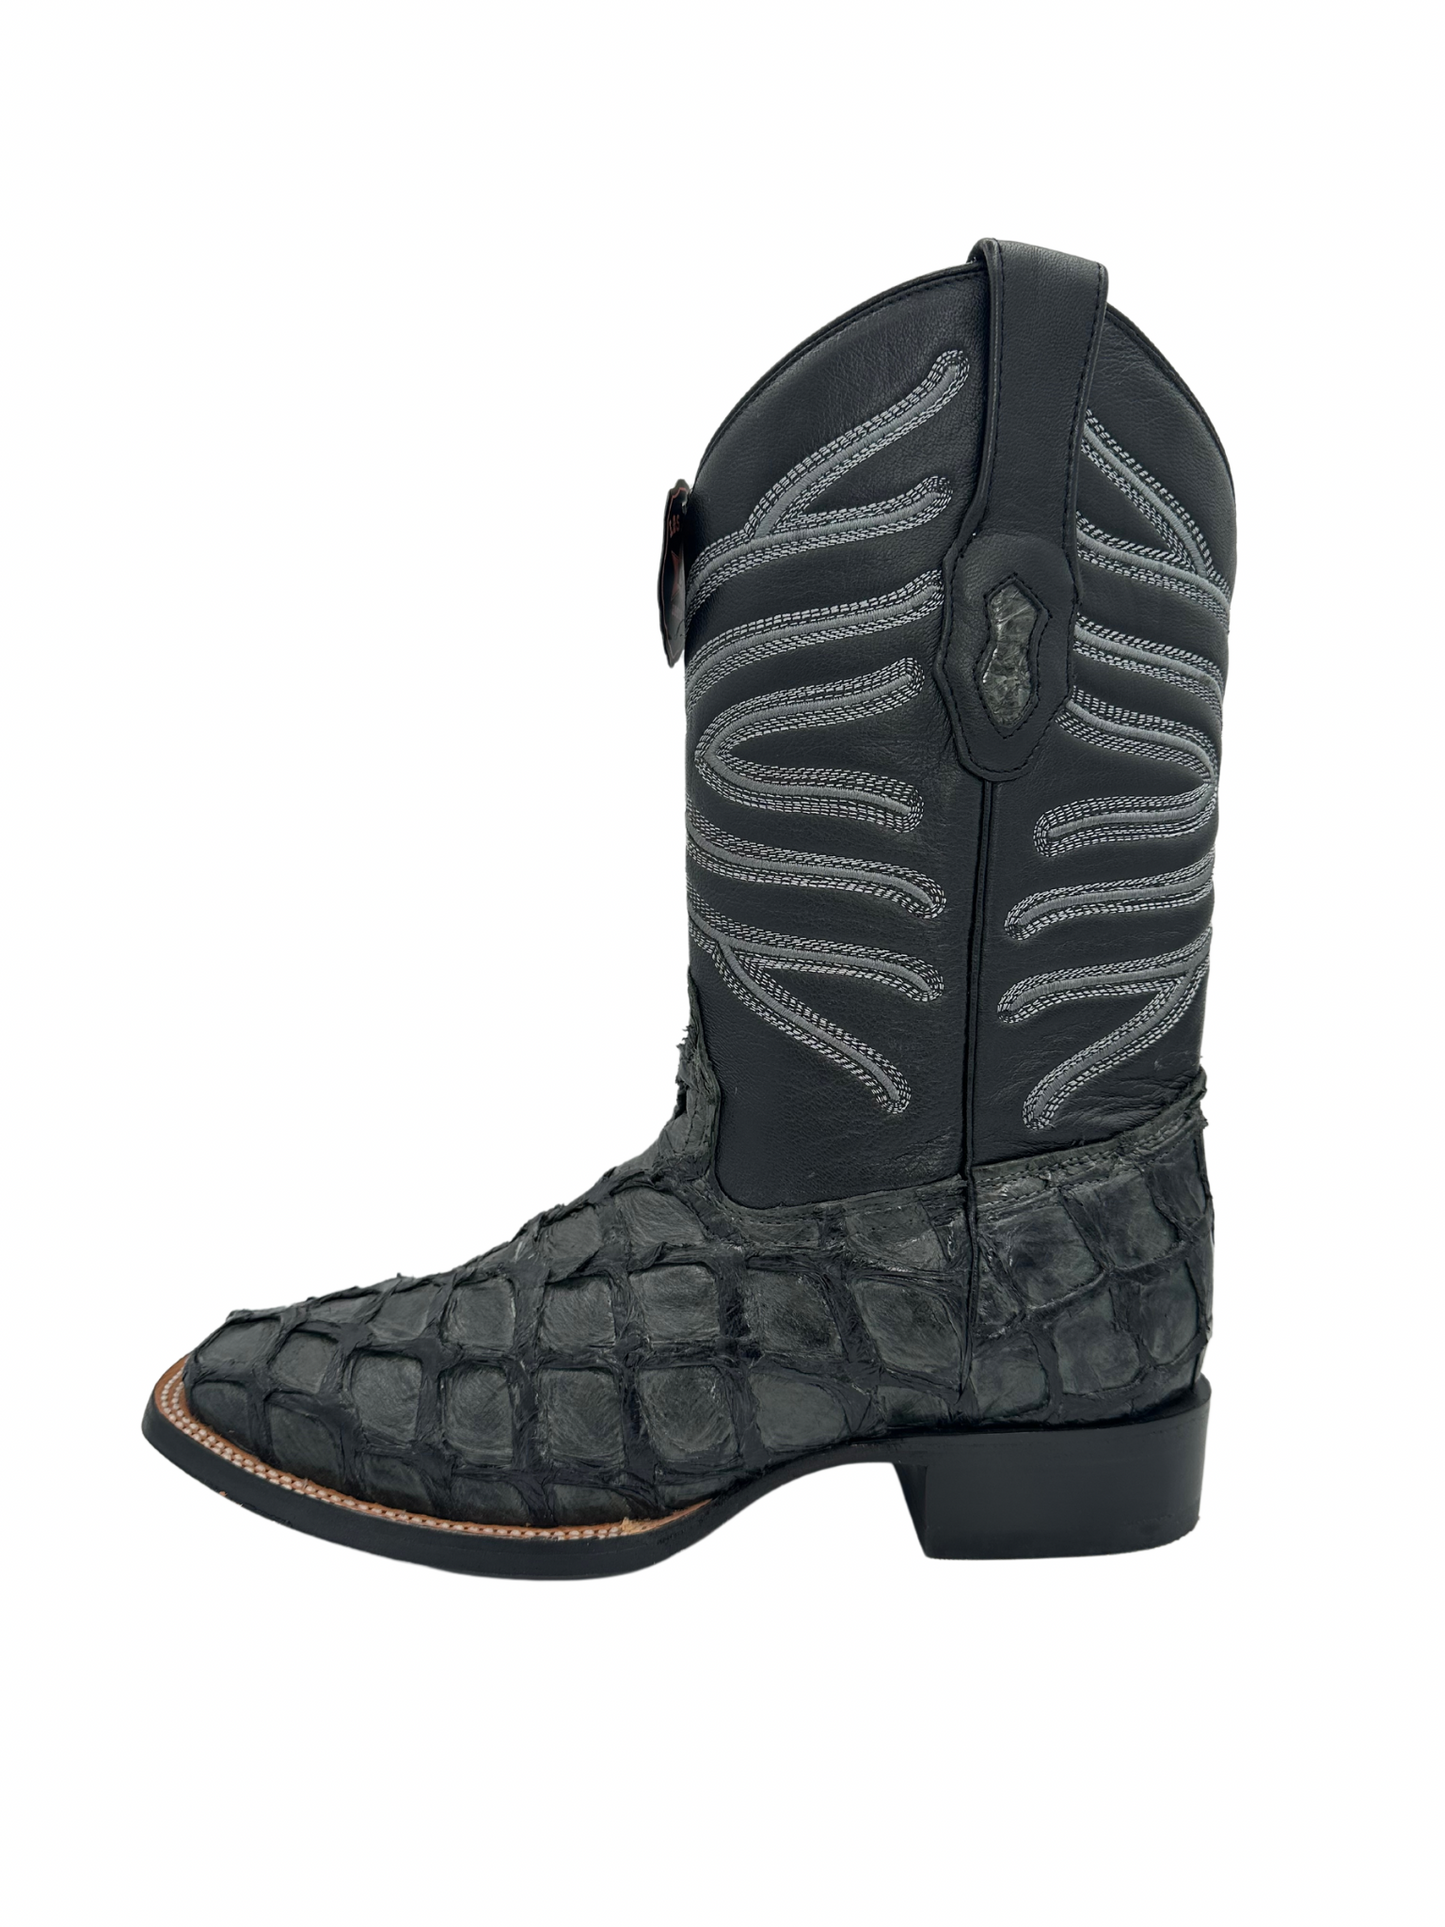 Los Altos Men's Gray Glossy Genuine Pirarucu Wide Square Toe Boot